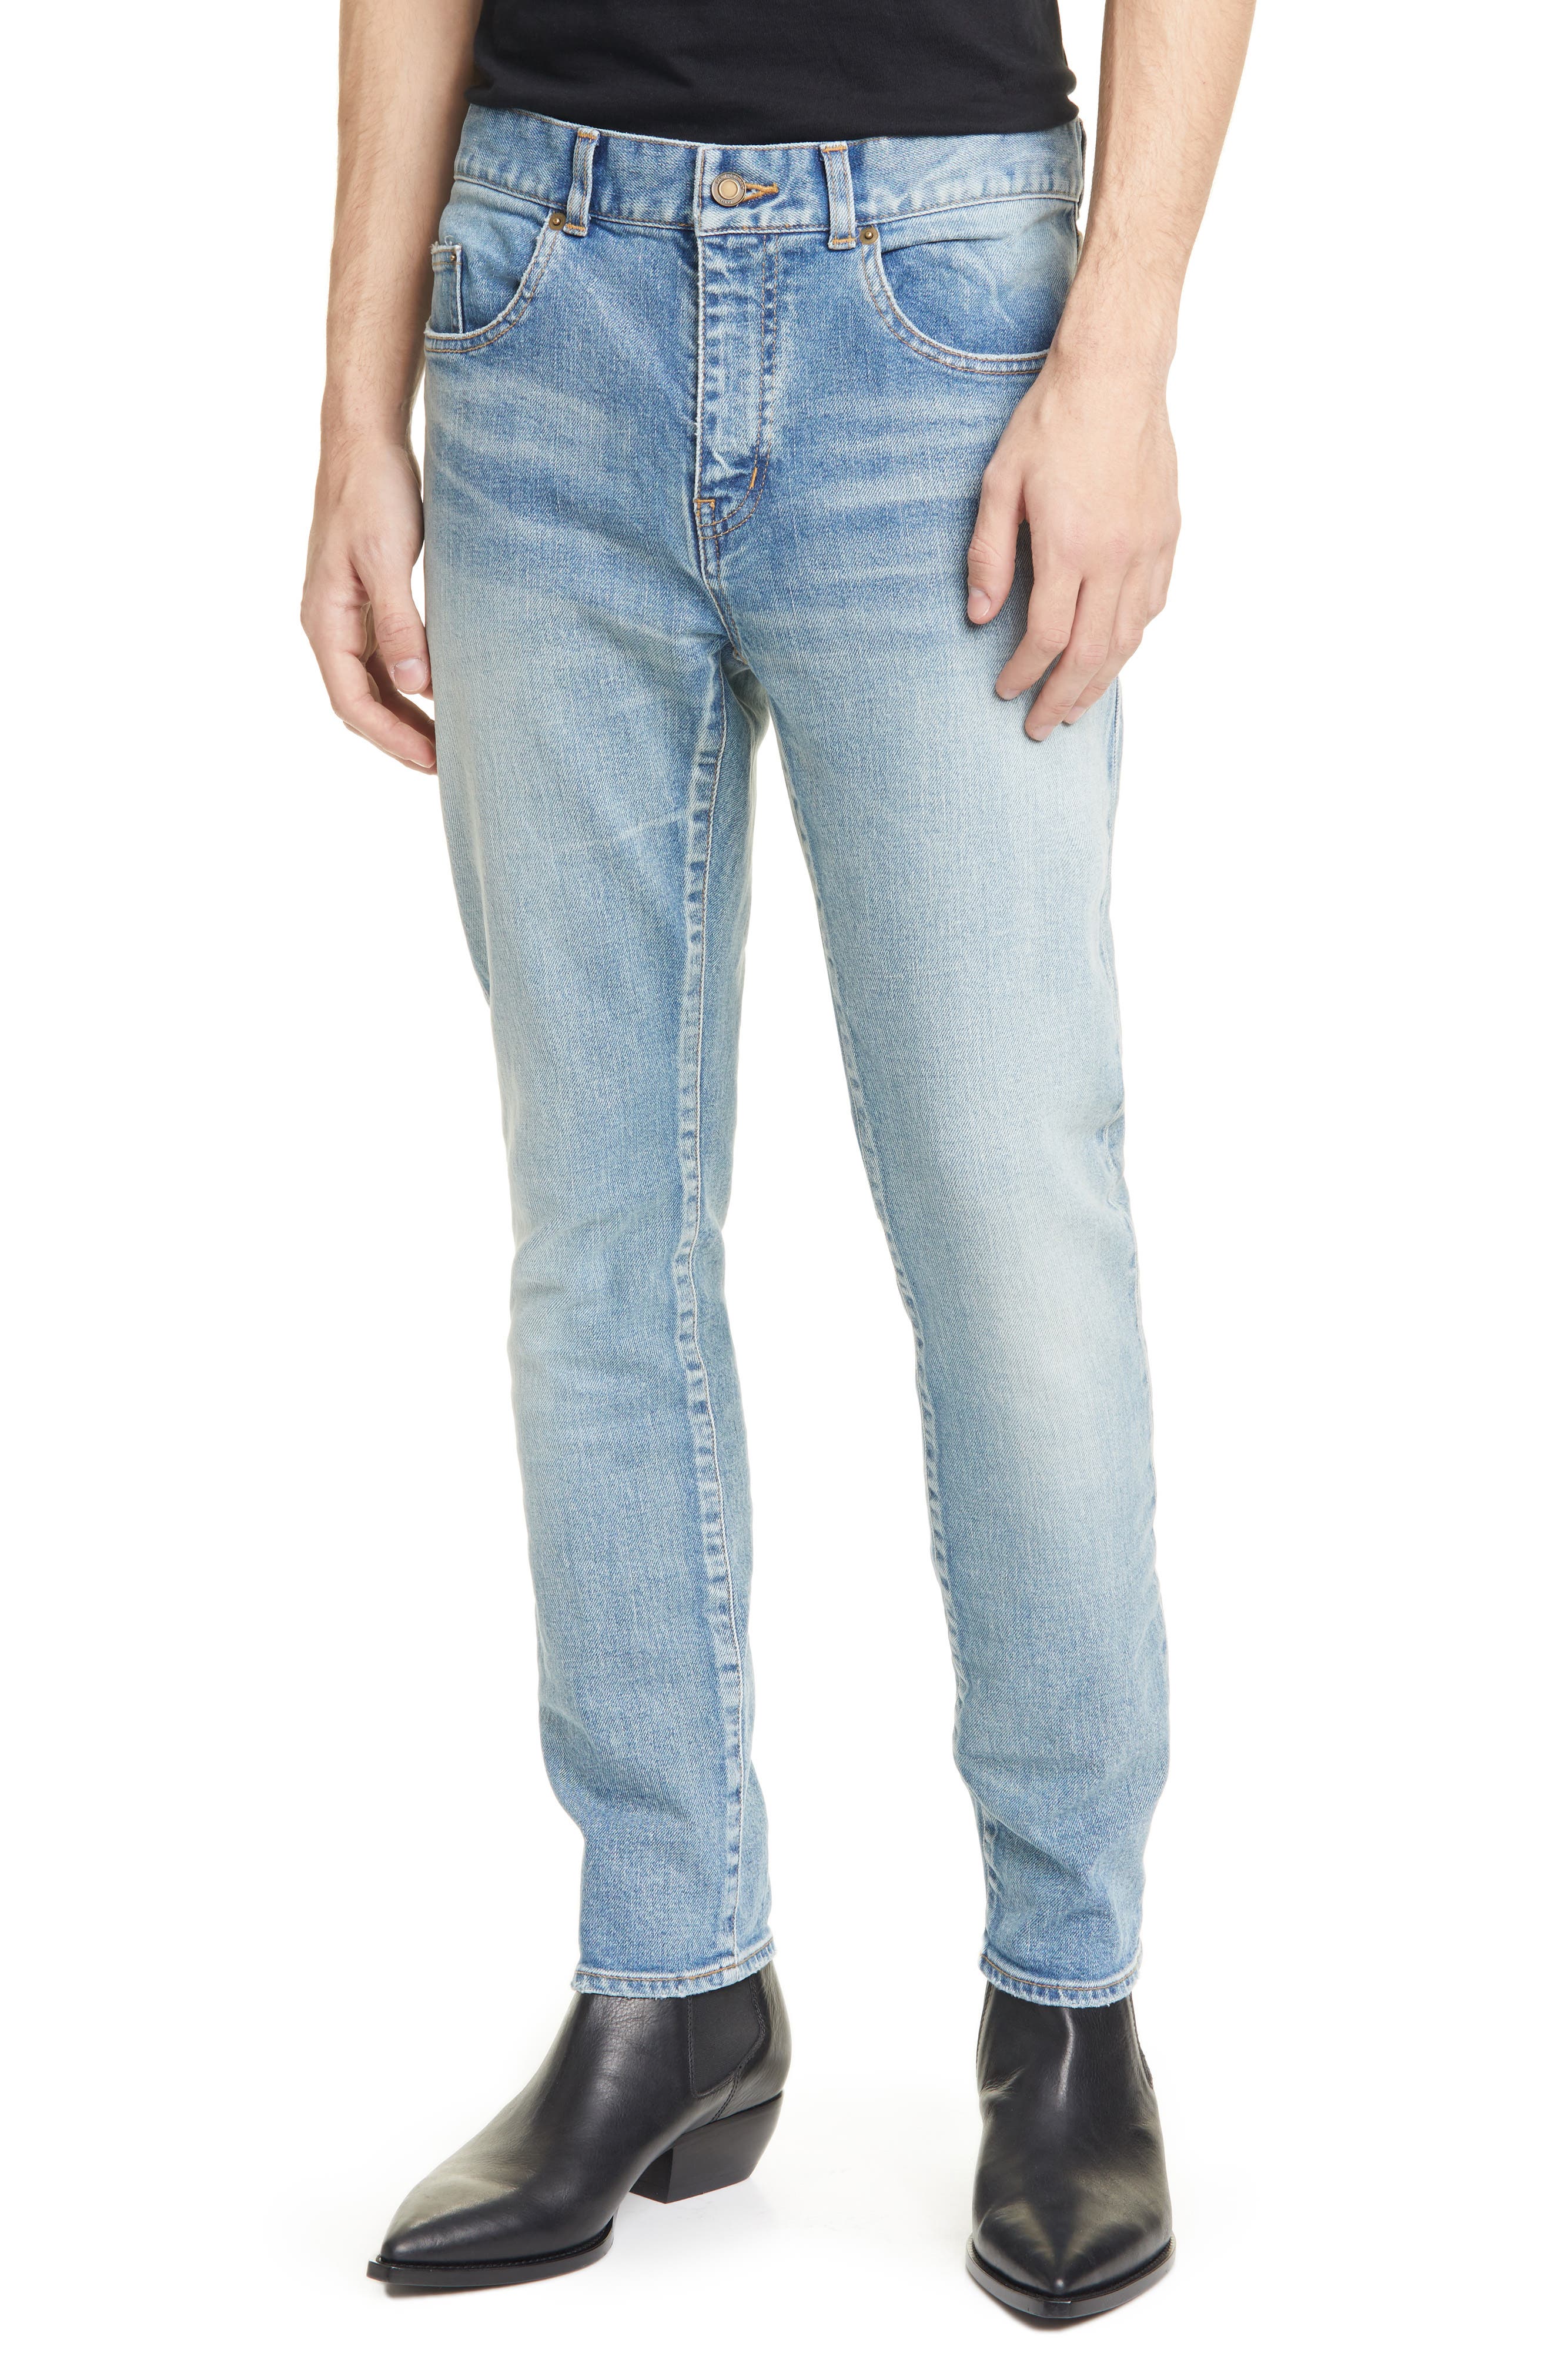 light blue designer jeans